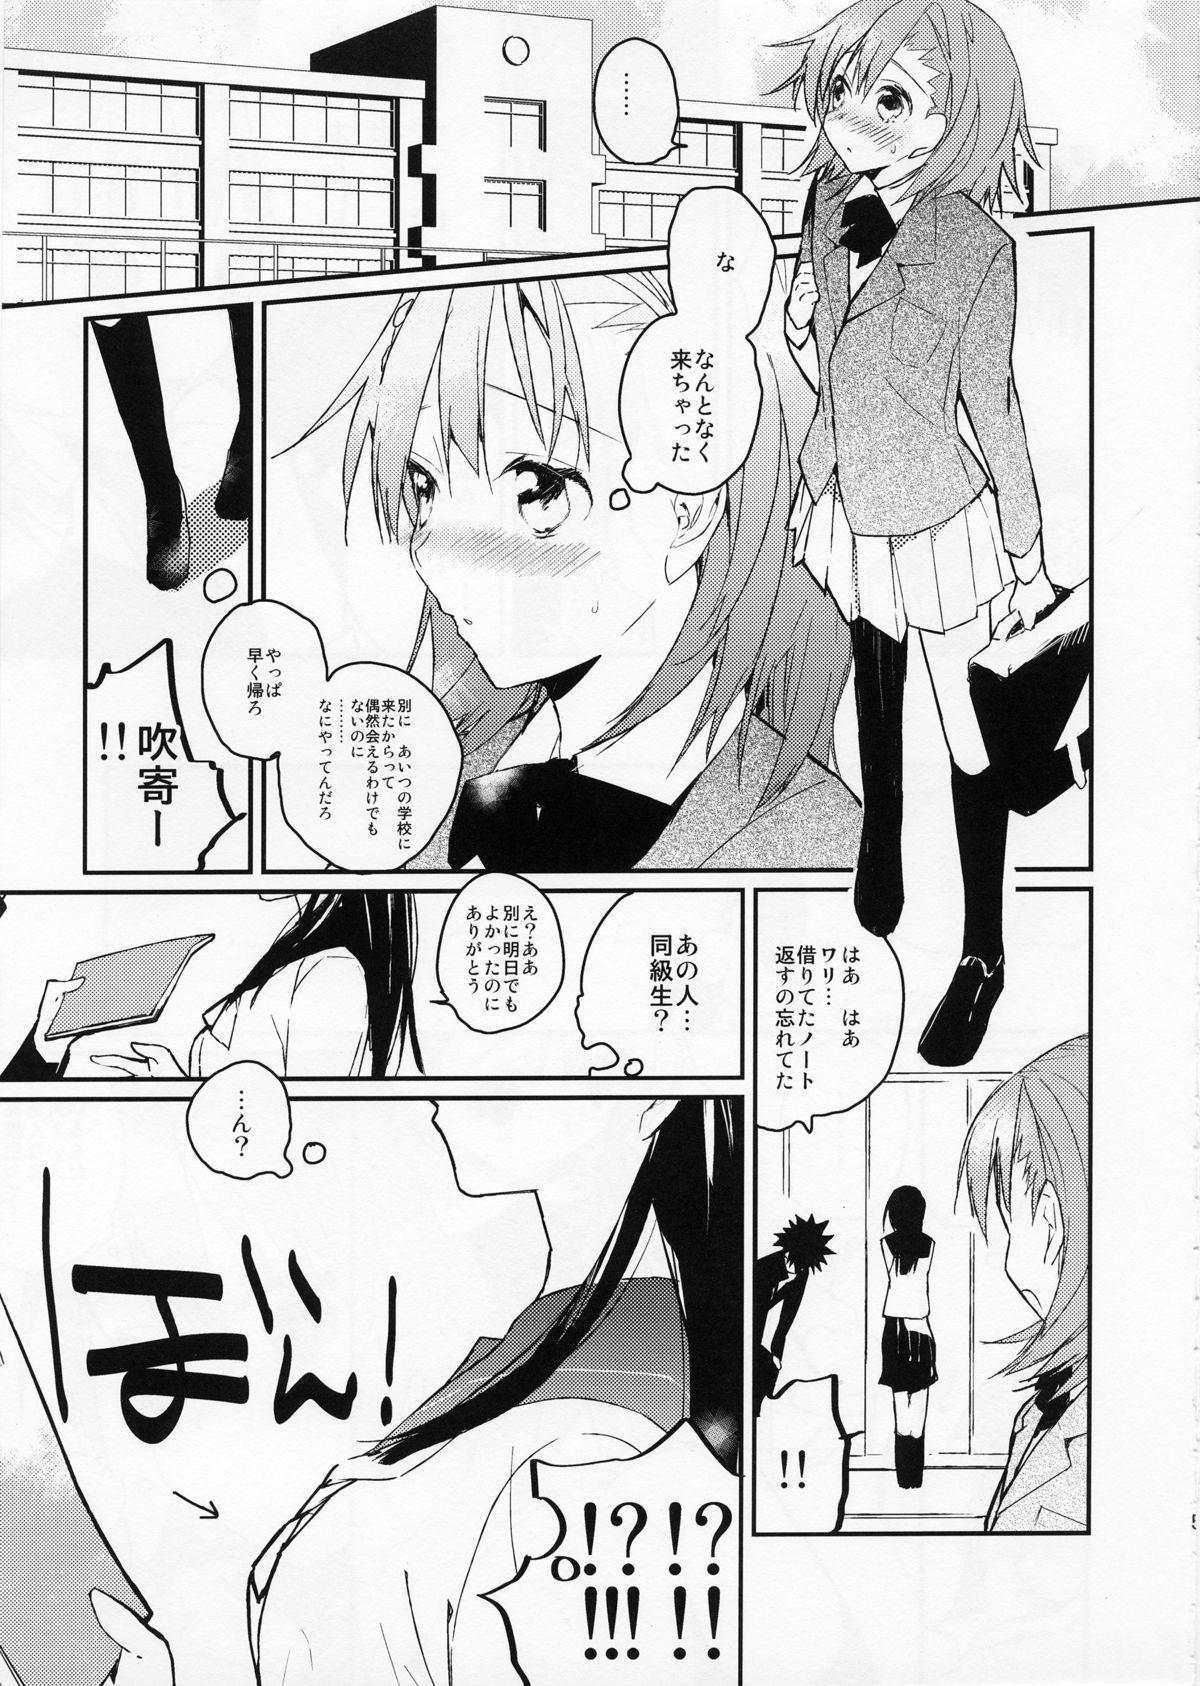 Concha Mikoto to. 2 - Toaru kagaku no railgun Toaru majutsu no index Asiansex - Page 5